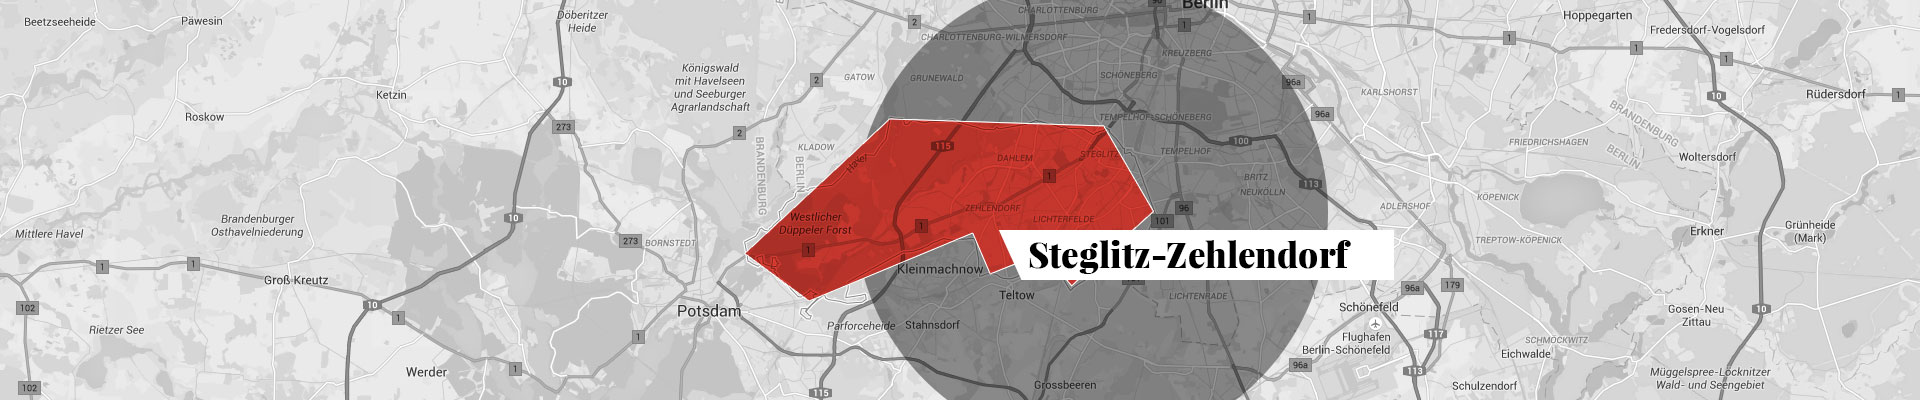 Steglitz-Zehlendorf Stadtplan